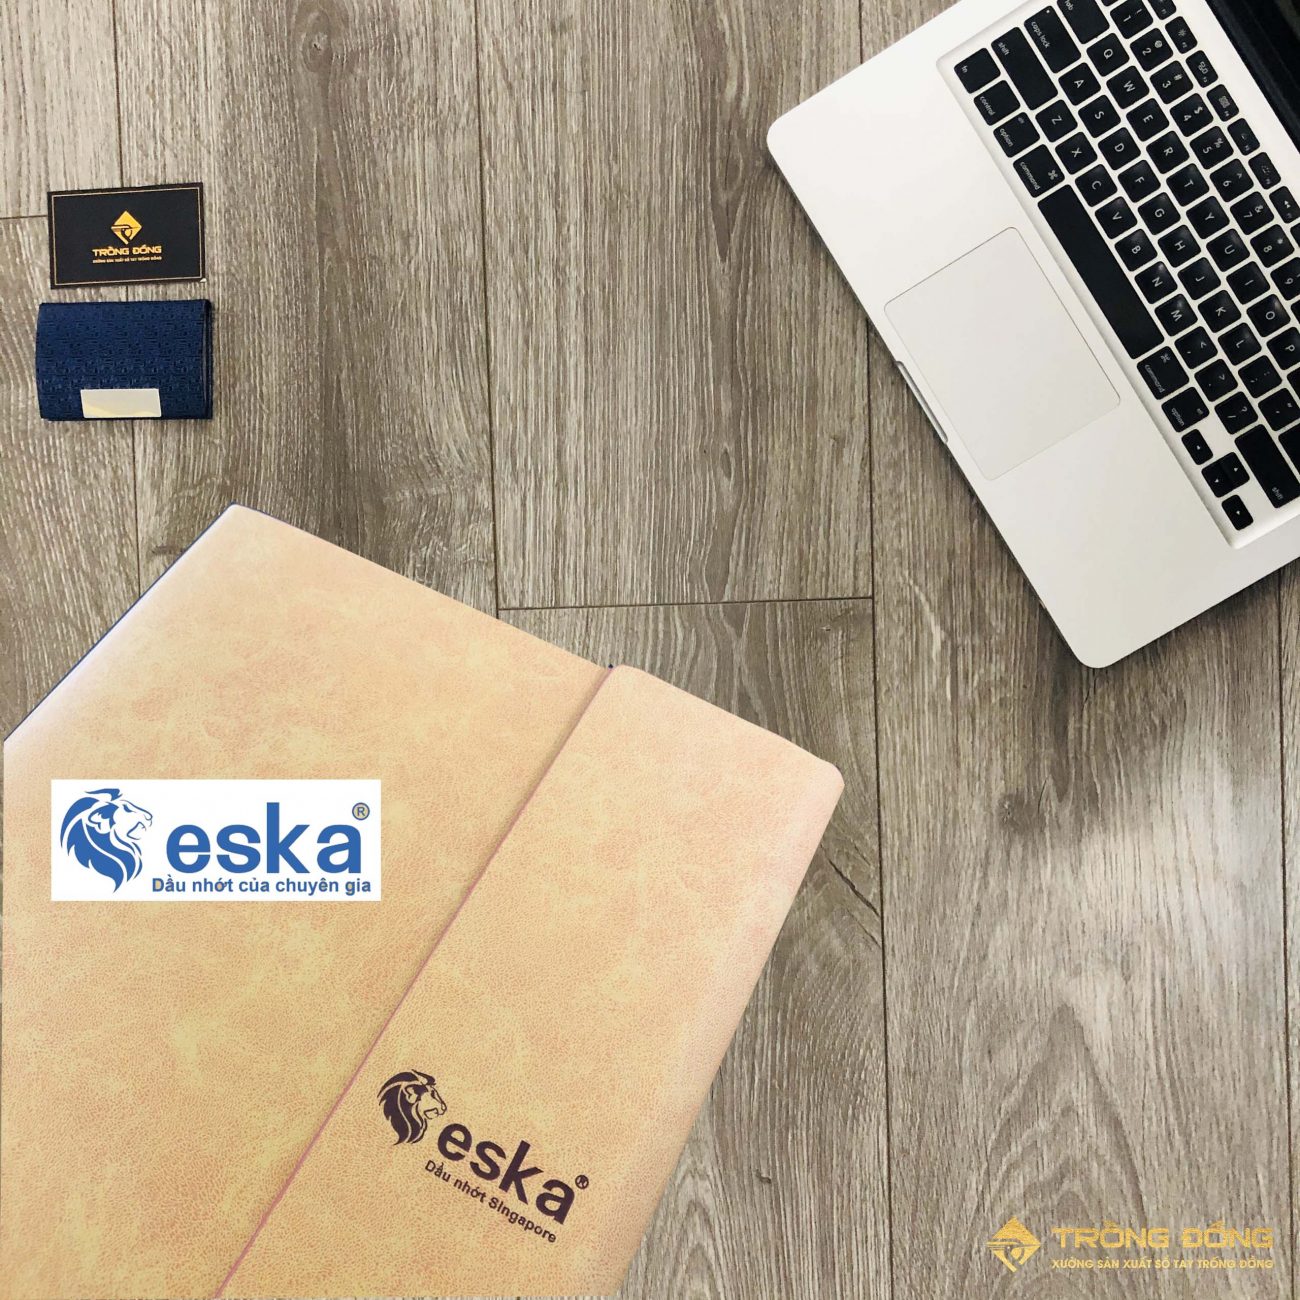 Logo ESKA được ép nhiệt nổi bật trên bề mặt da PU cao cấp